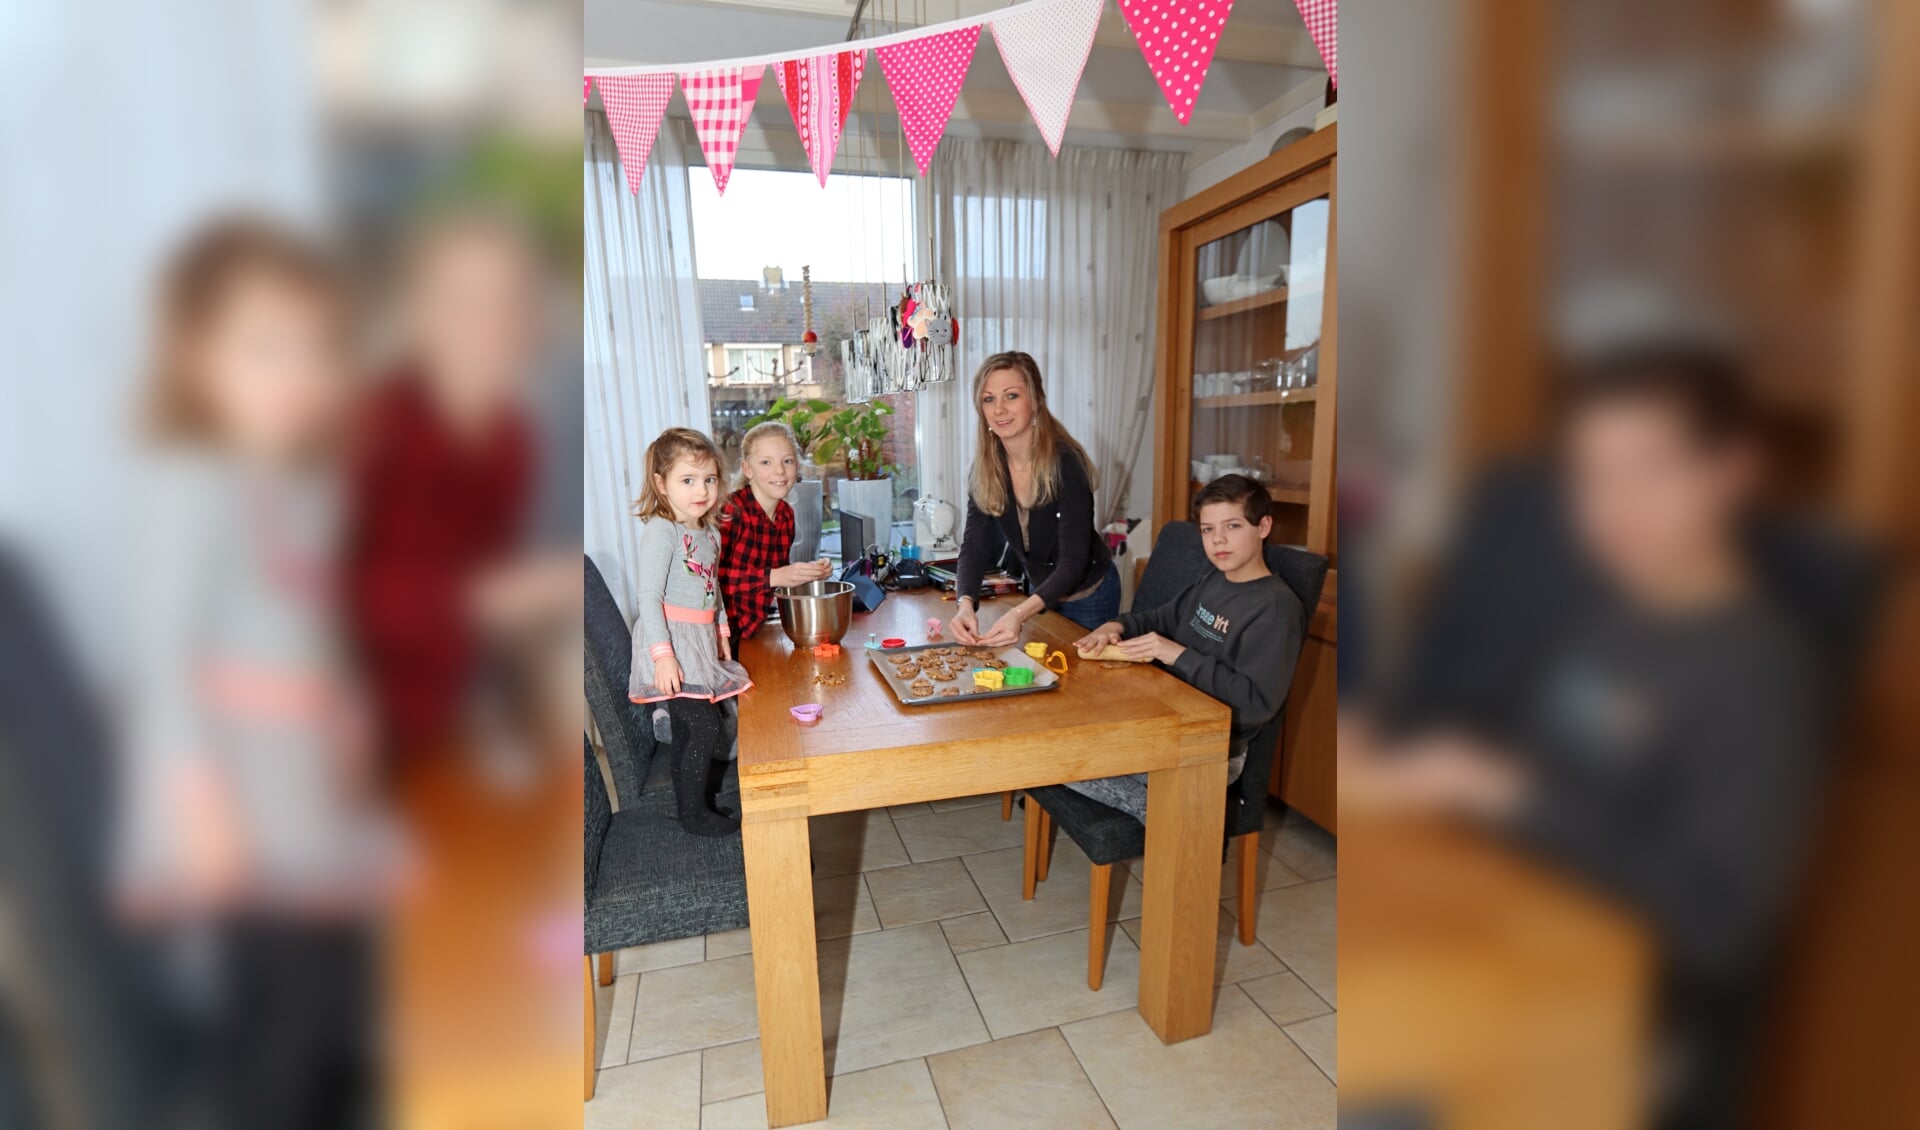 Annette Bevelander aan het bakken met haar kinderen Noah en Kira en oppaskindje Romy.